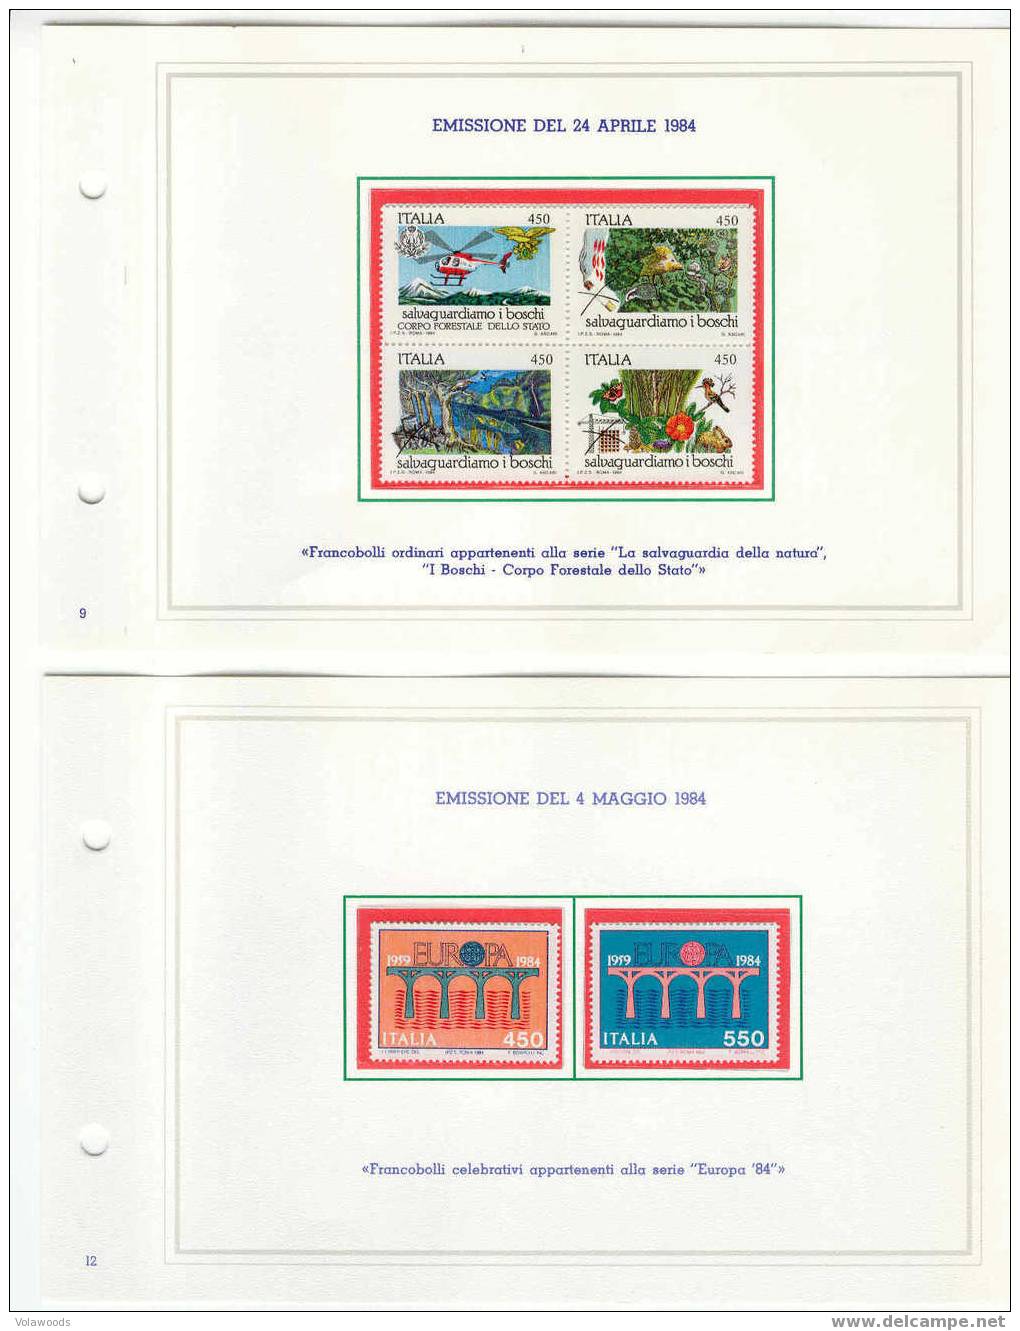 Italia - Annata Completa 1984 In Libretto Delle Poste Completo Di Tutte Le Carte Valori Emesse (con Interi Postali) - Années Complètes